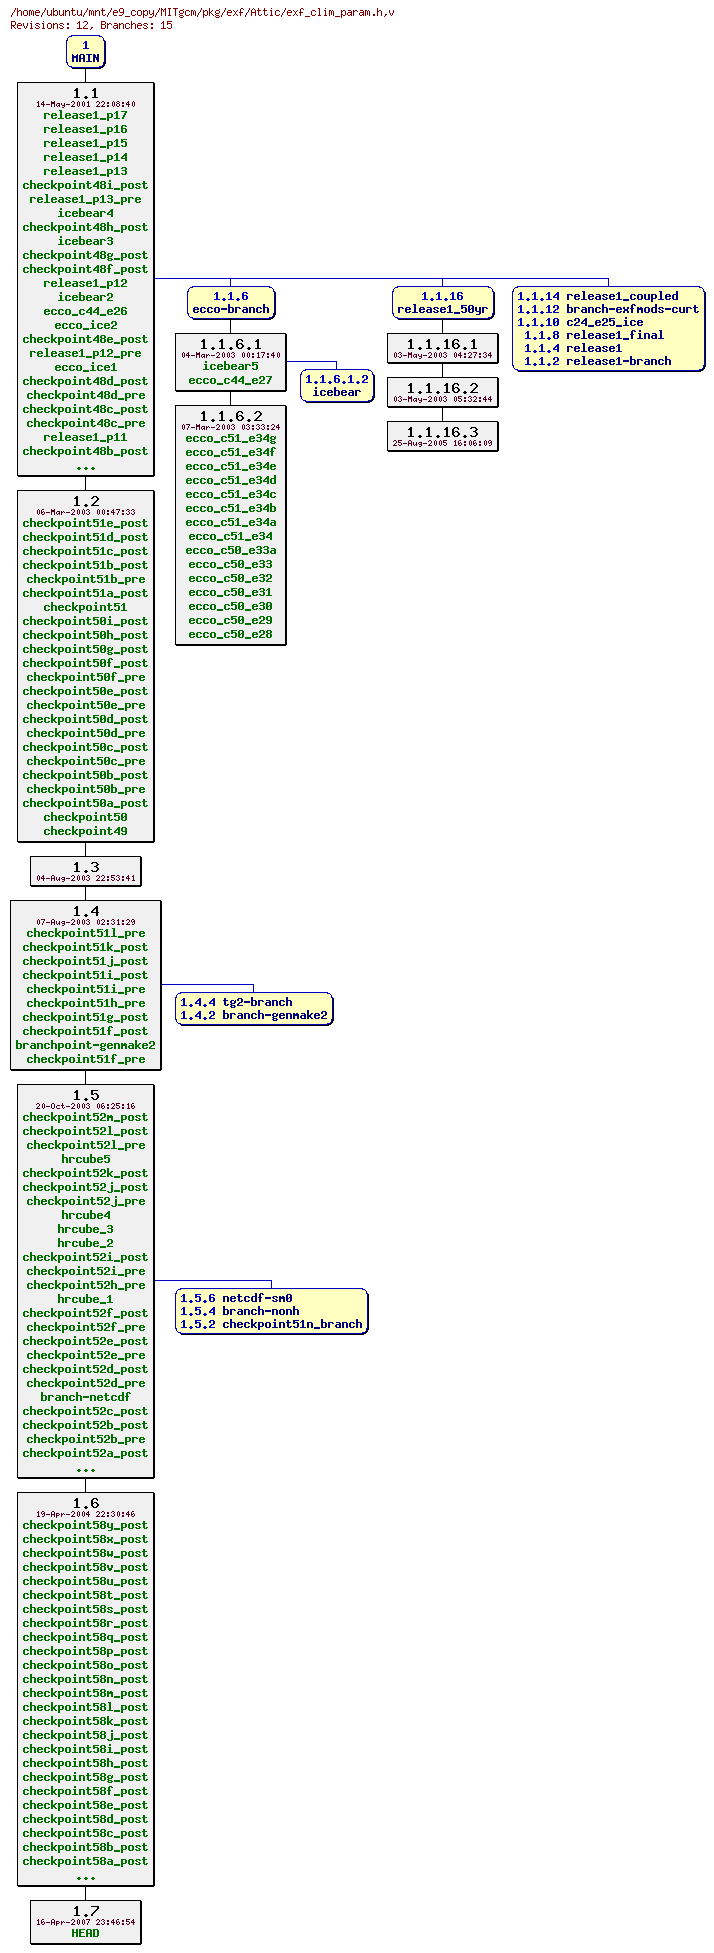 Revisions of MITgcm/pkg/exf/exf_clim_param.h